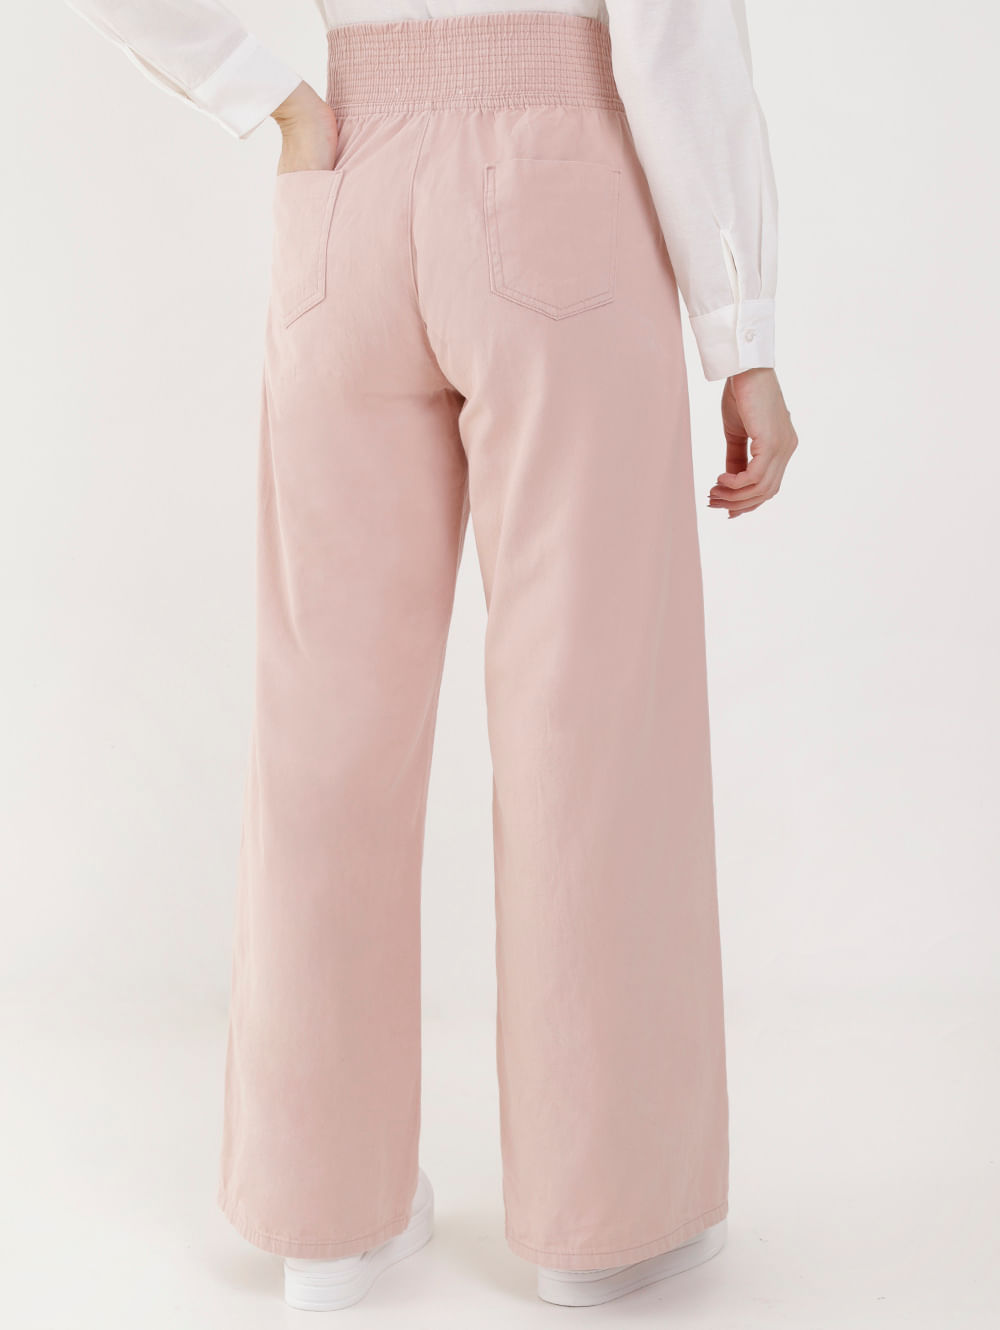 Calça Pantalona RS Dayane Rosa Pink